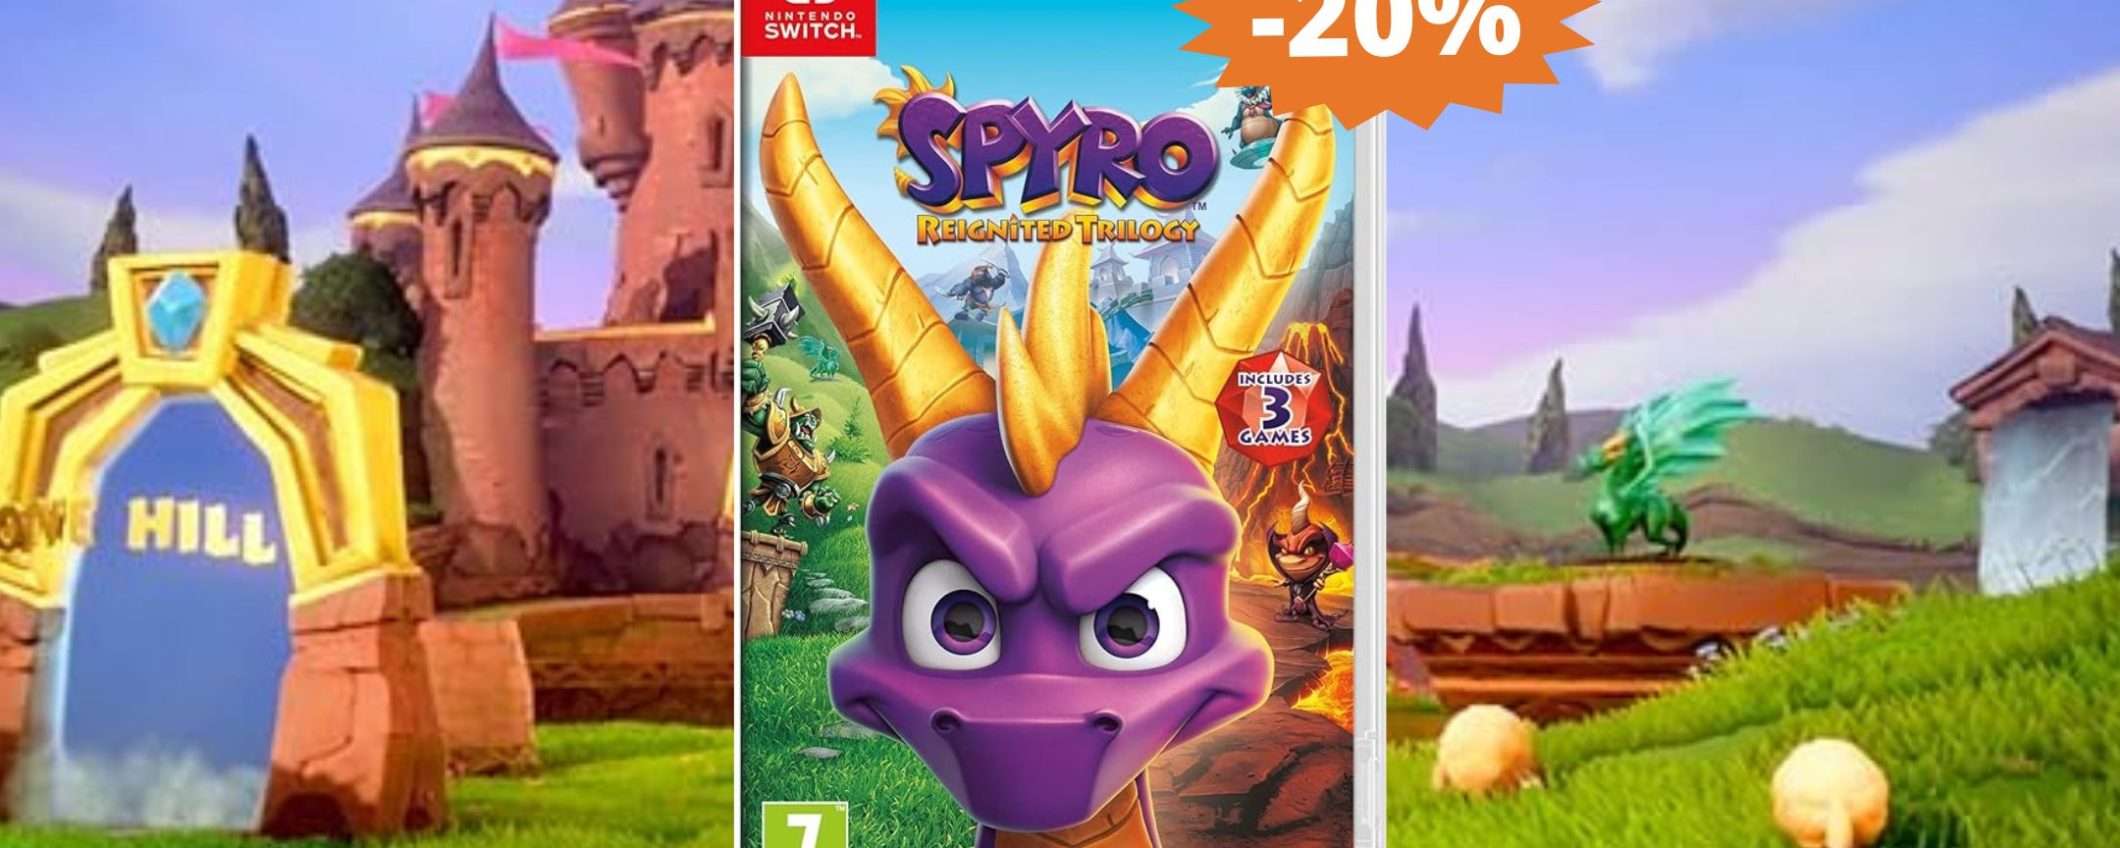 Spyro la trilogia per Nintendo Switch: sconto IMPERDIBILE del 20%